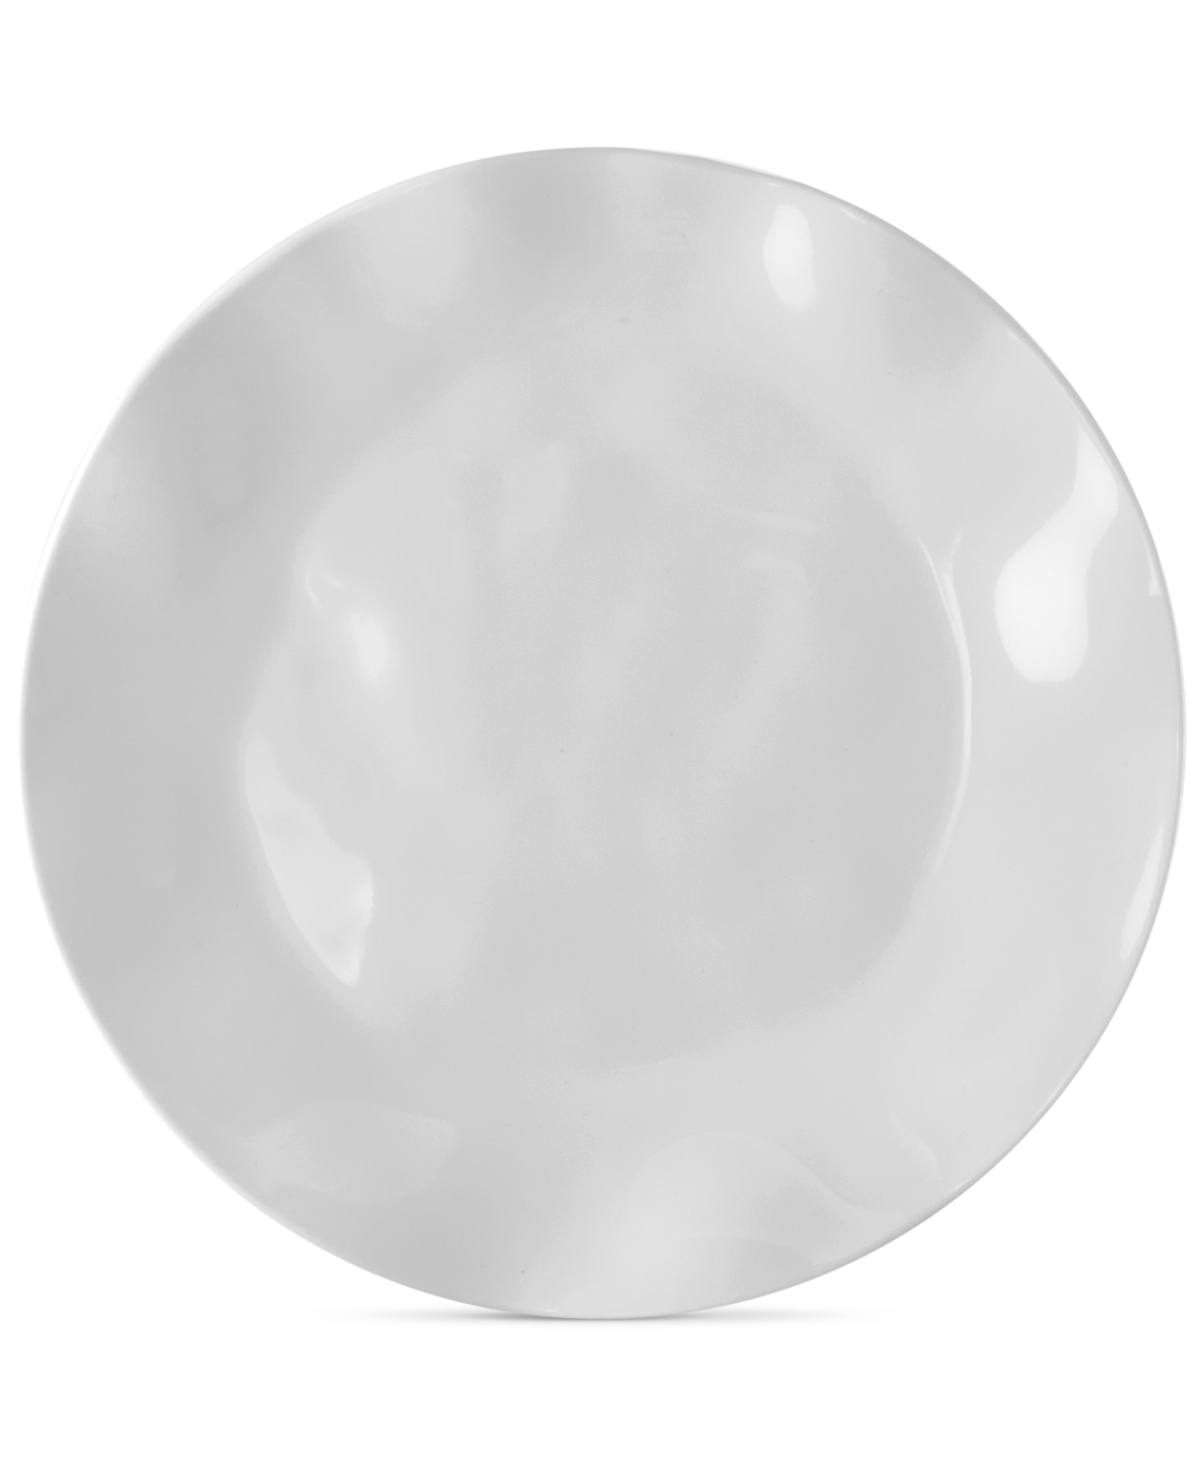 Ruffle White Melamine Dinner Plates, Set of 4 - WHITE